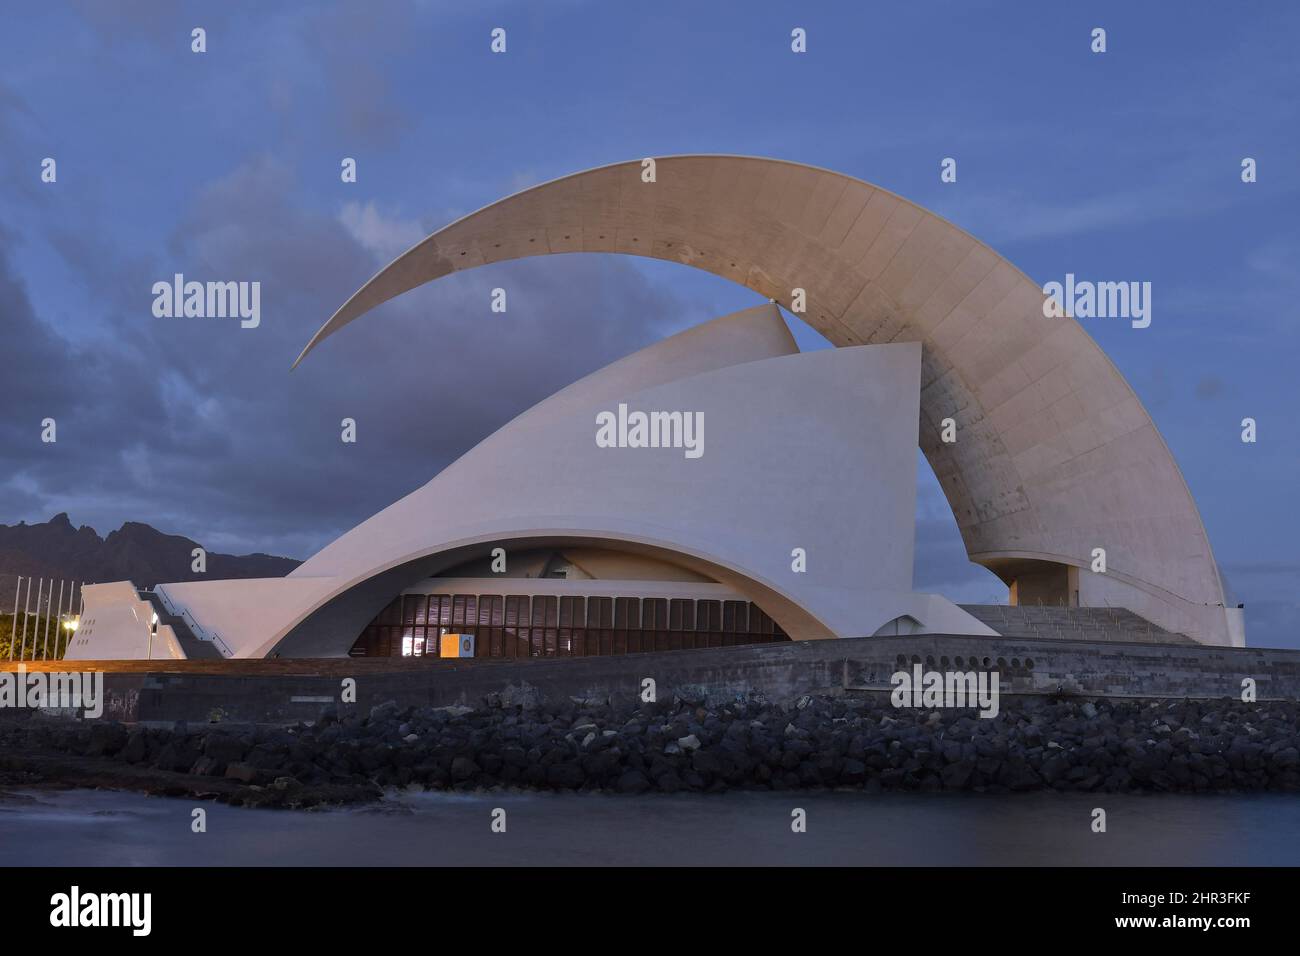 Auditorio de Teneriffa, moderne Wahrzeichen-Architektur in Santa Cruz de Teneriffa Kanarische Inseln Spanien. Entworfen vom Architekten Santiago Calatrava. Stockfoto